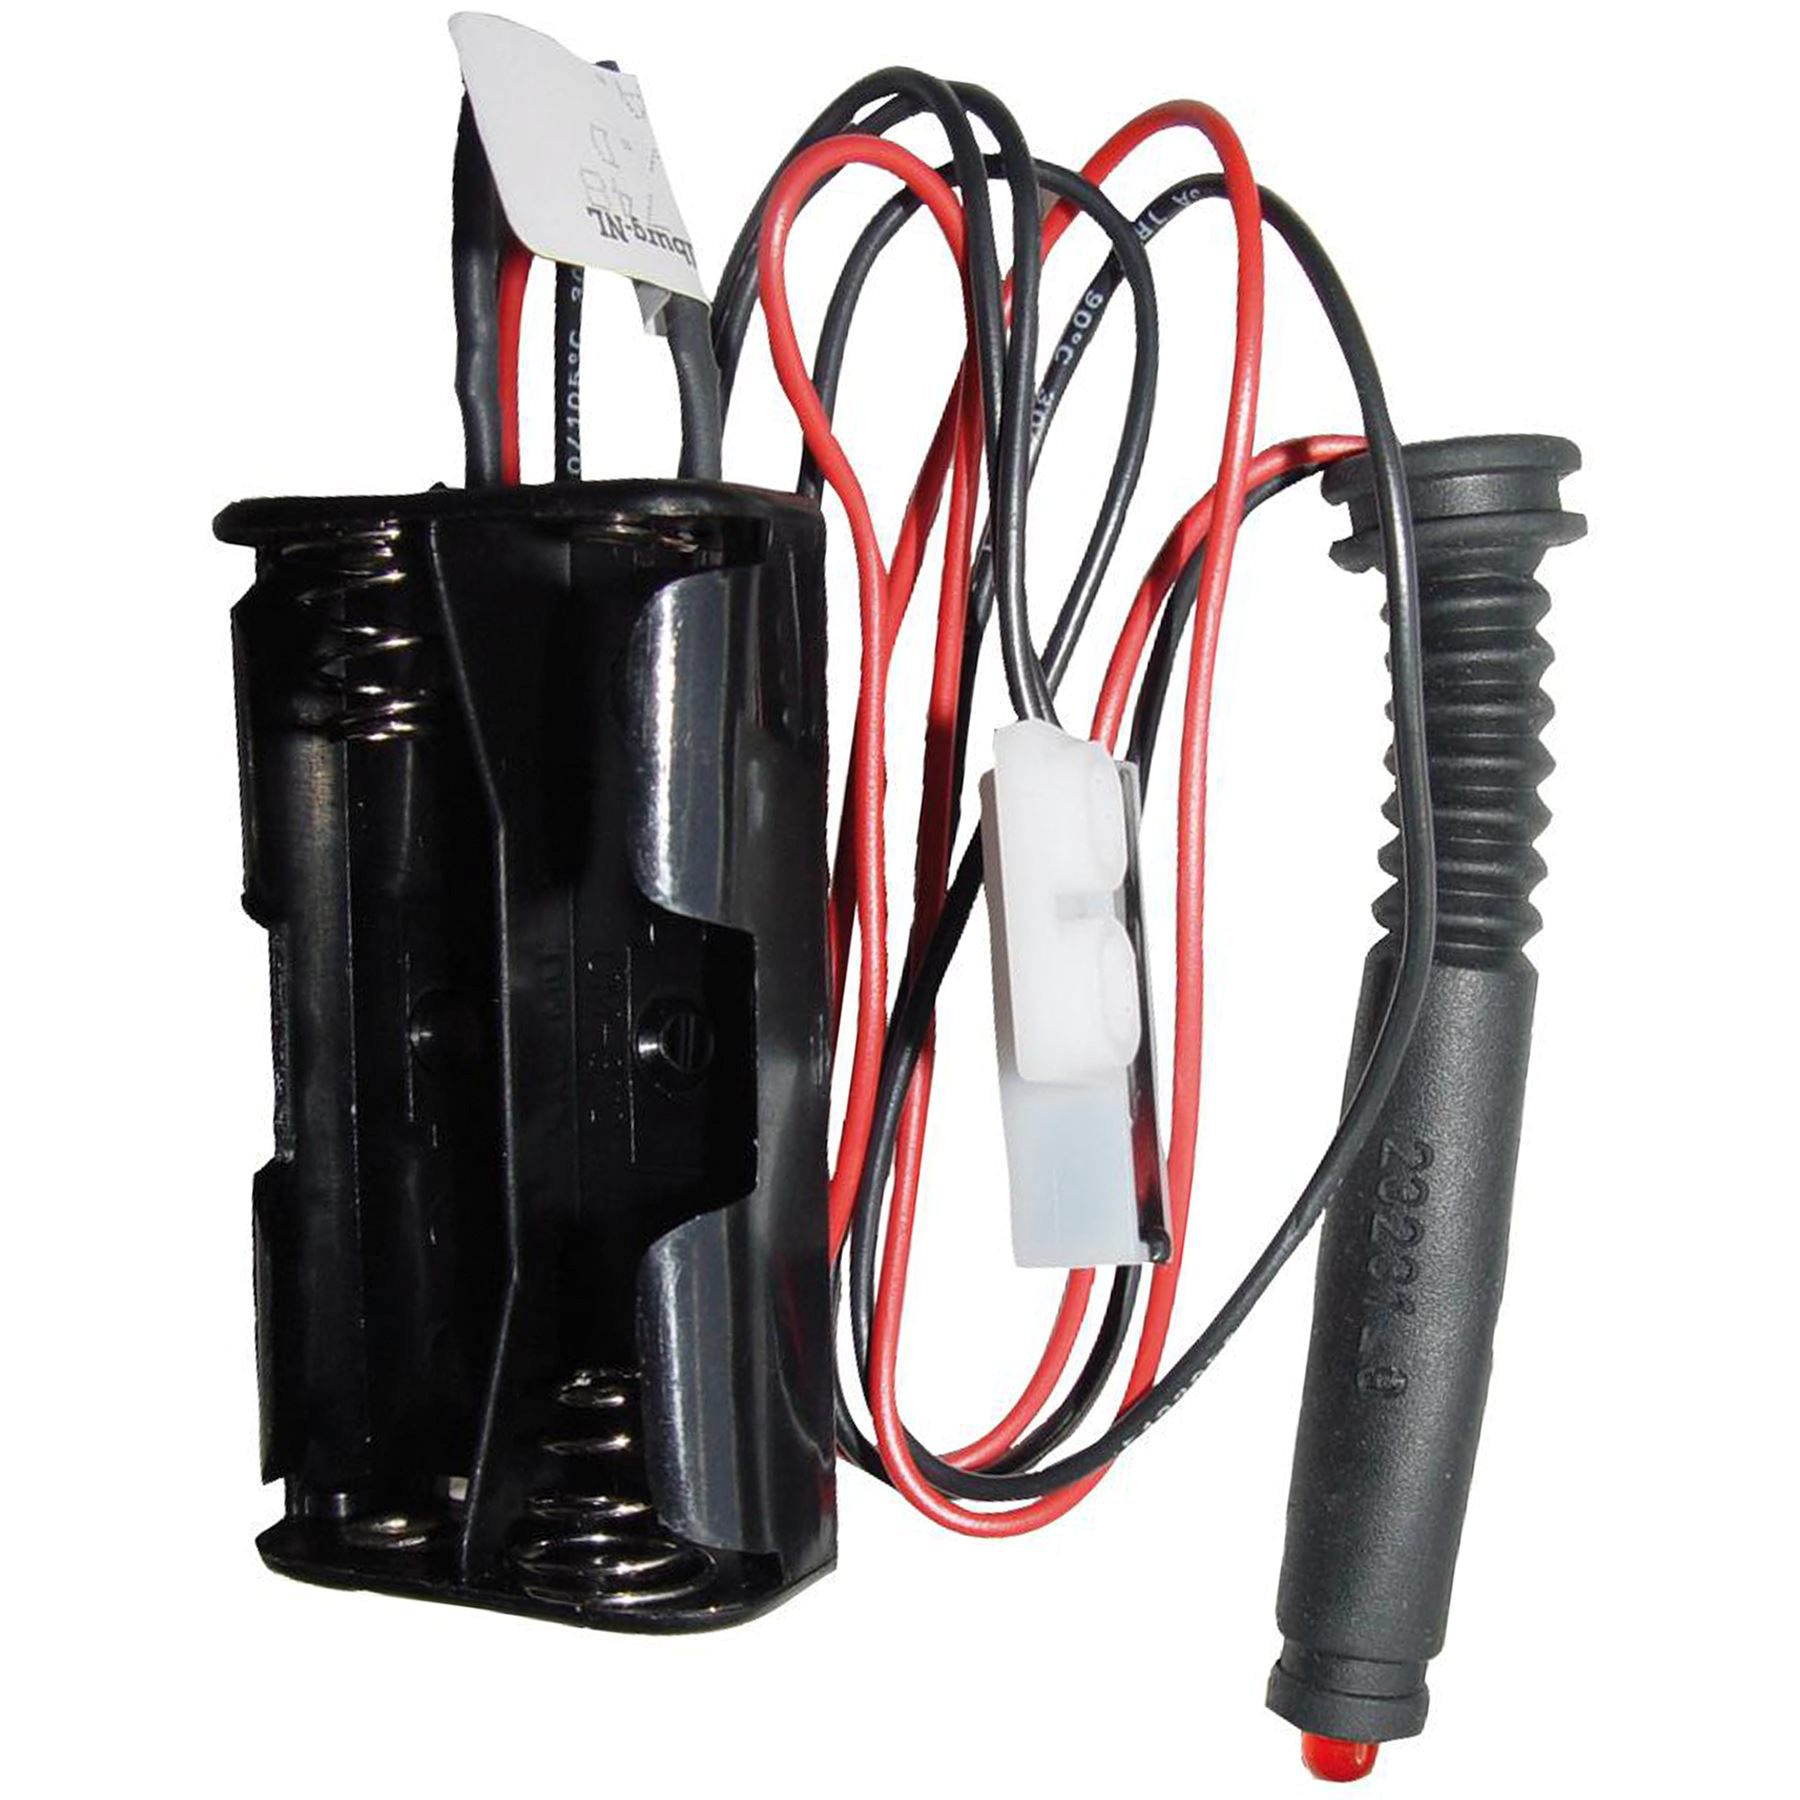 Thetford Schalter mit Kabelsatz passend zu C200 CW/CWE